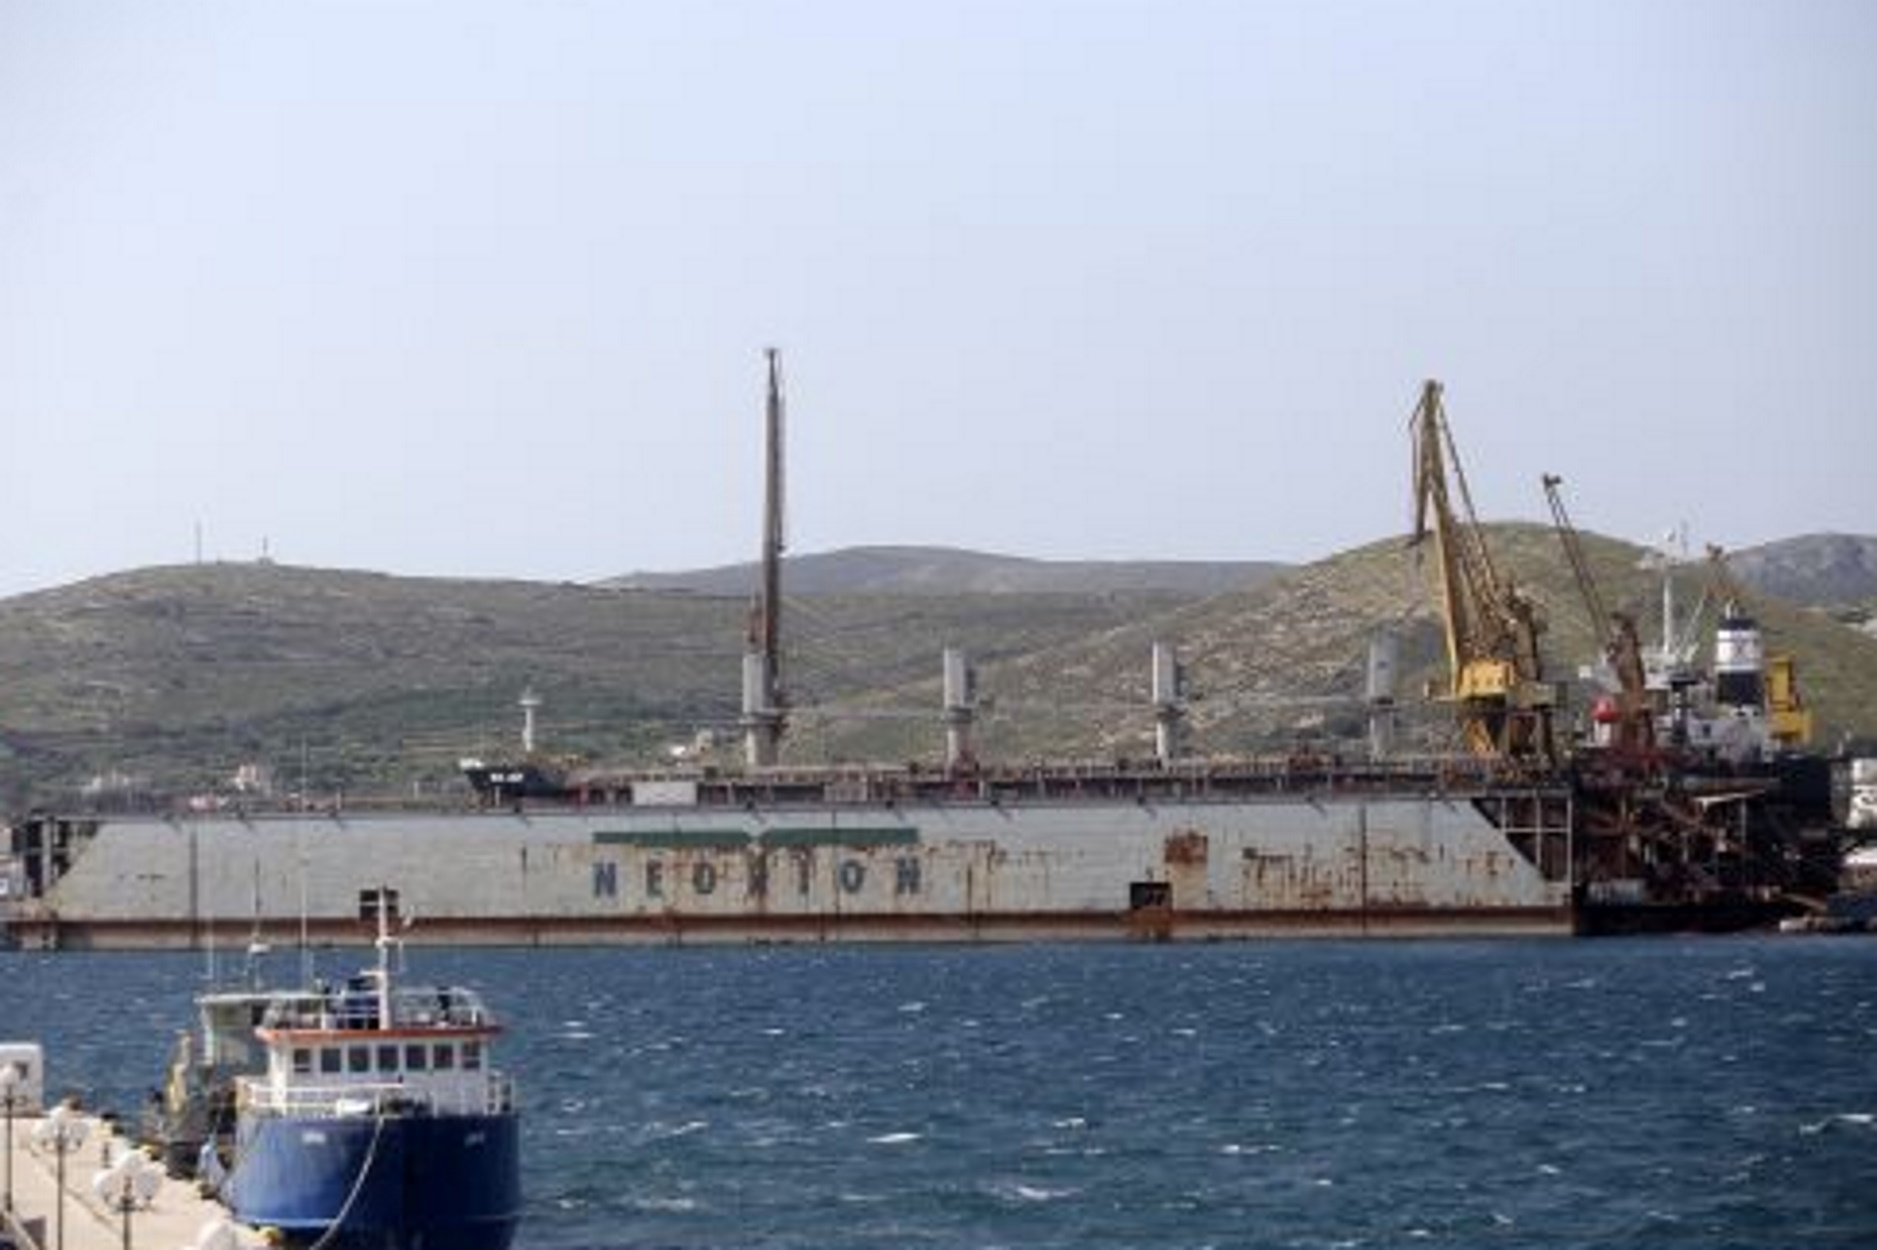 Δρακόντεια μέτρα ελέγχου στα πλοία που φτάνουν στο Νεώριο Σύρου για το φόβο κορονοϊού